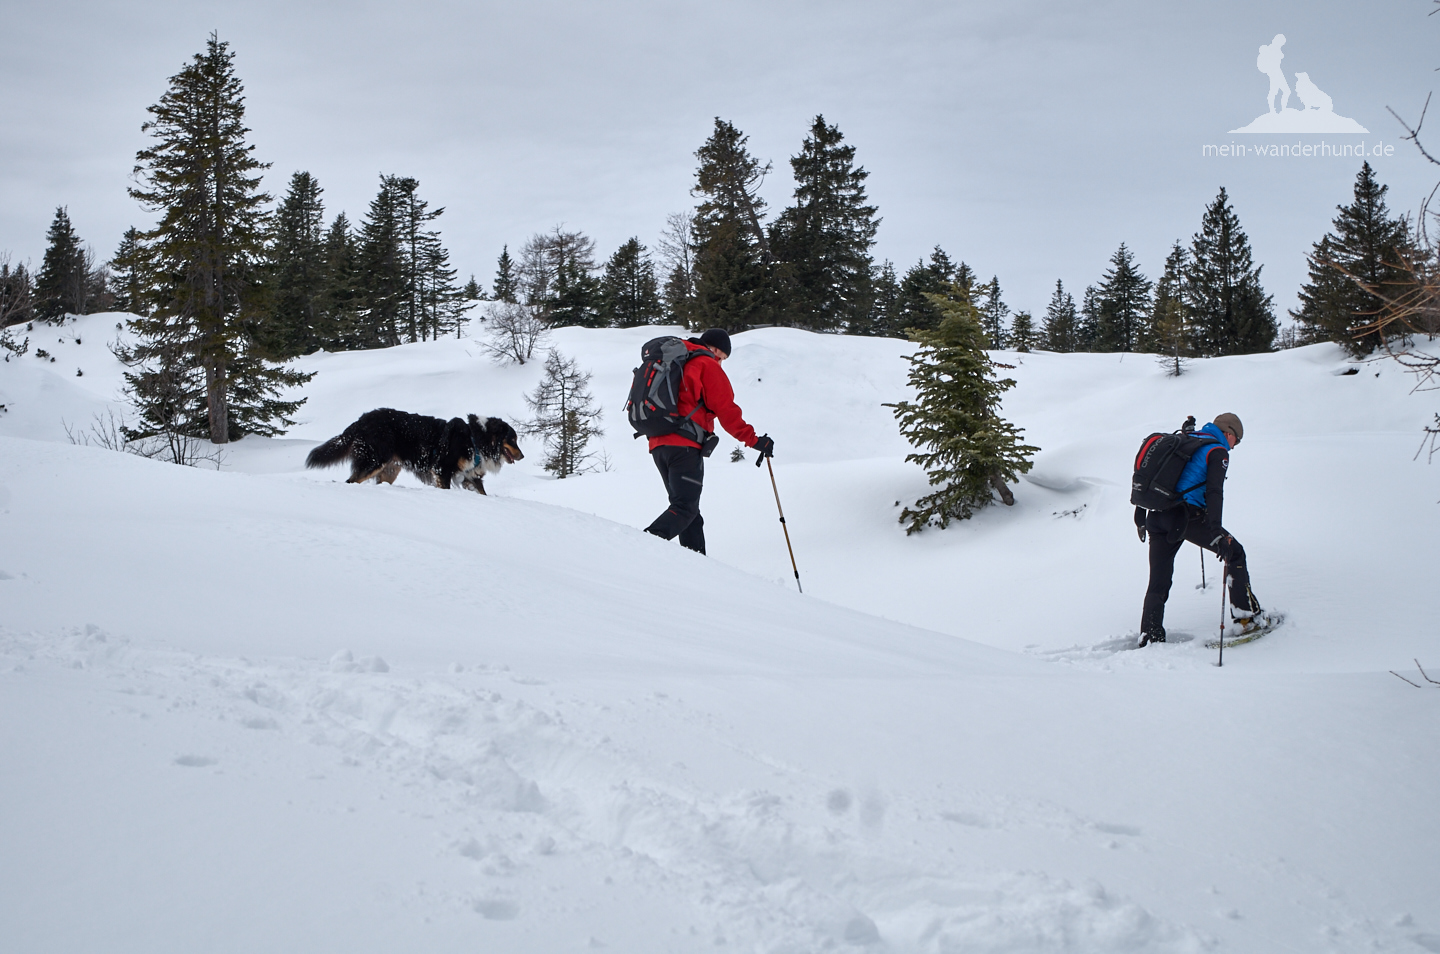 Macht Spaß: Schneeschuhwandern mit Hund